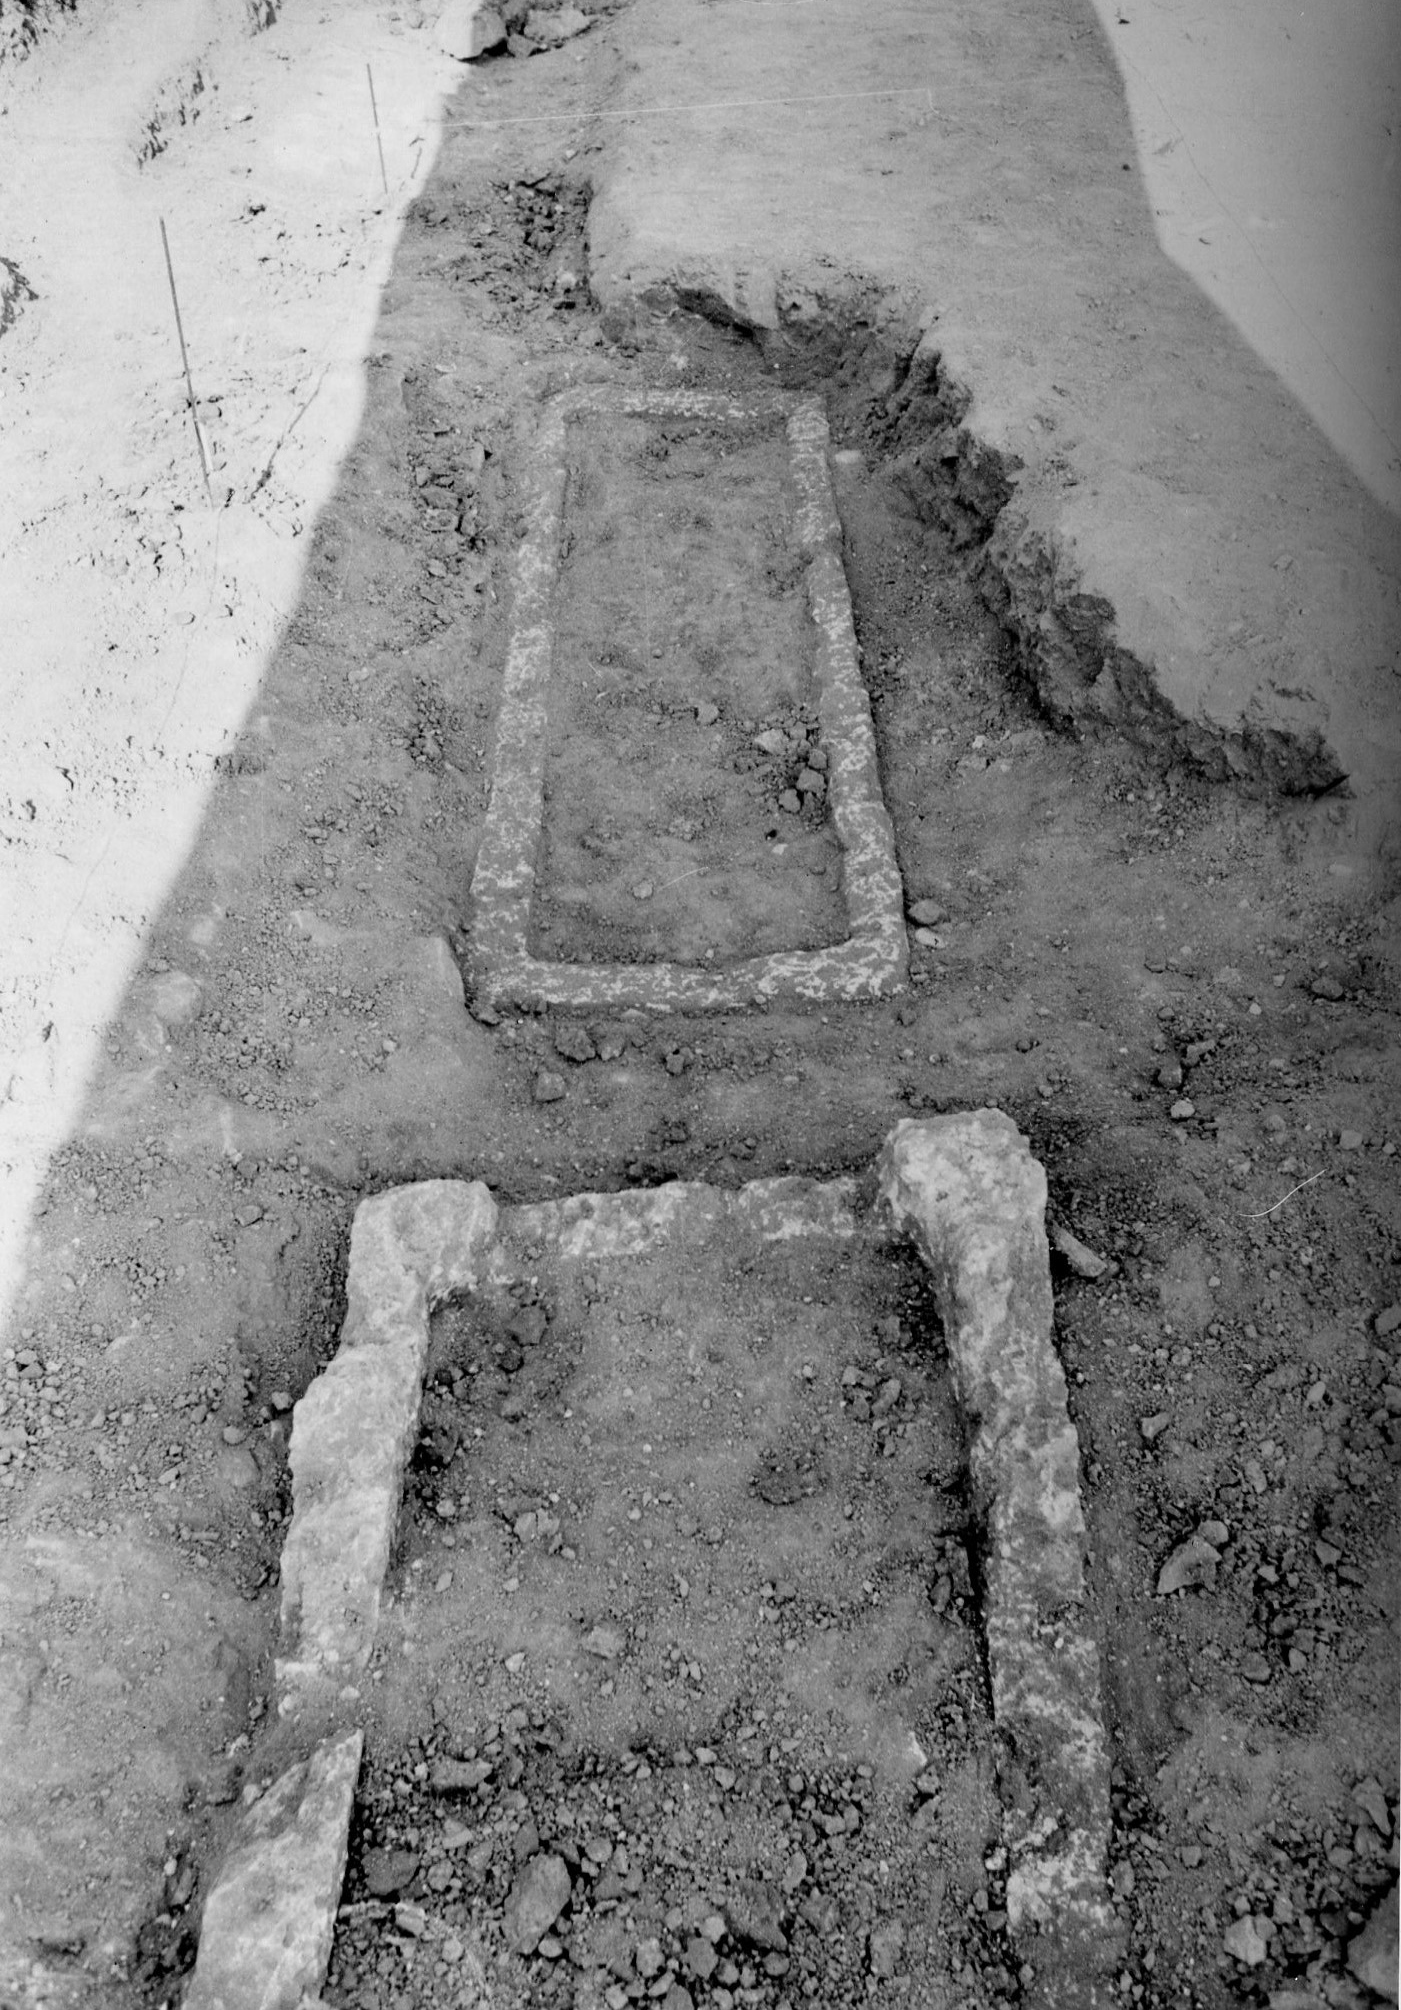 Basilica paleocristiana di CAPO DON, Sarcofago 3 (tomba a cassone, strutture per il culto) - Riva Ligure (IM)  (Eta' tardoantica)